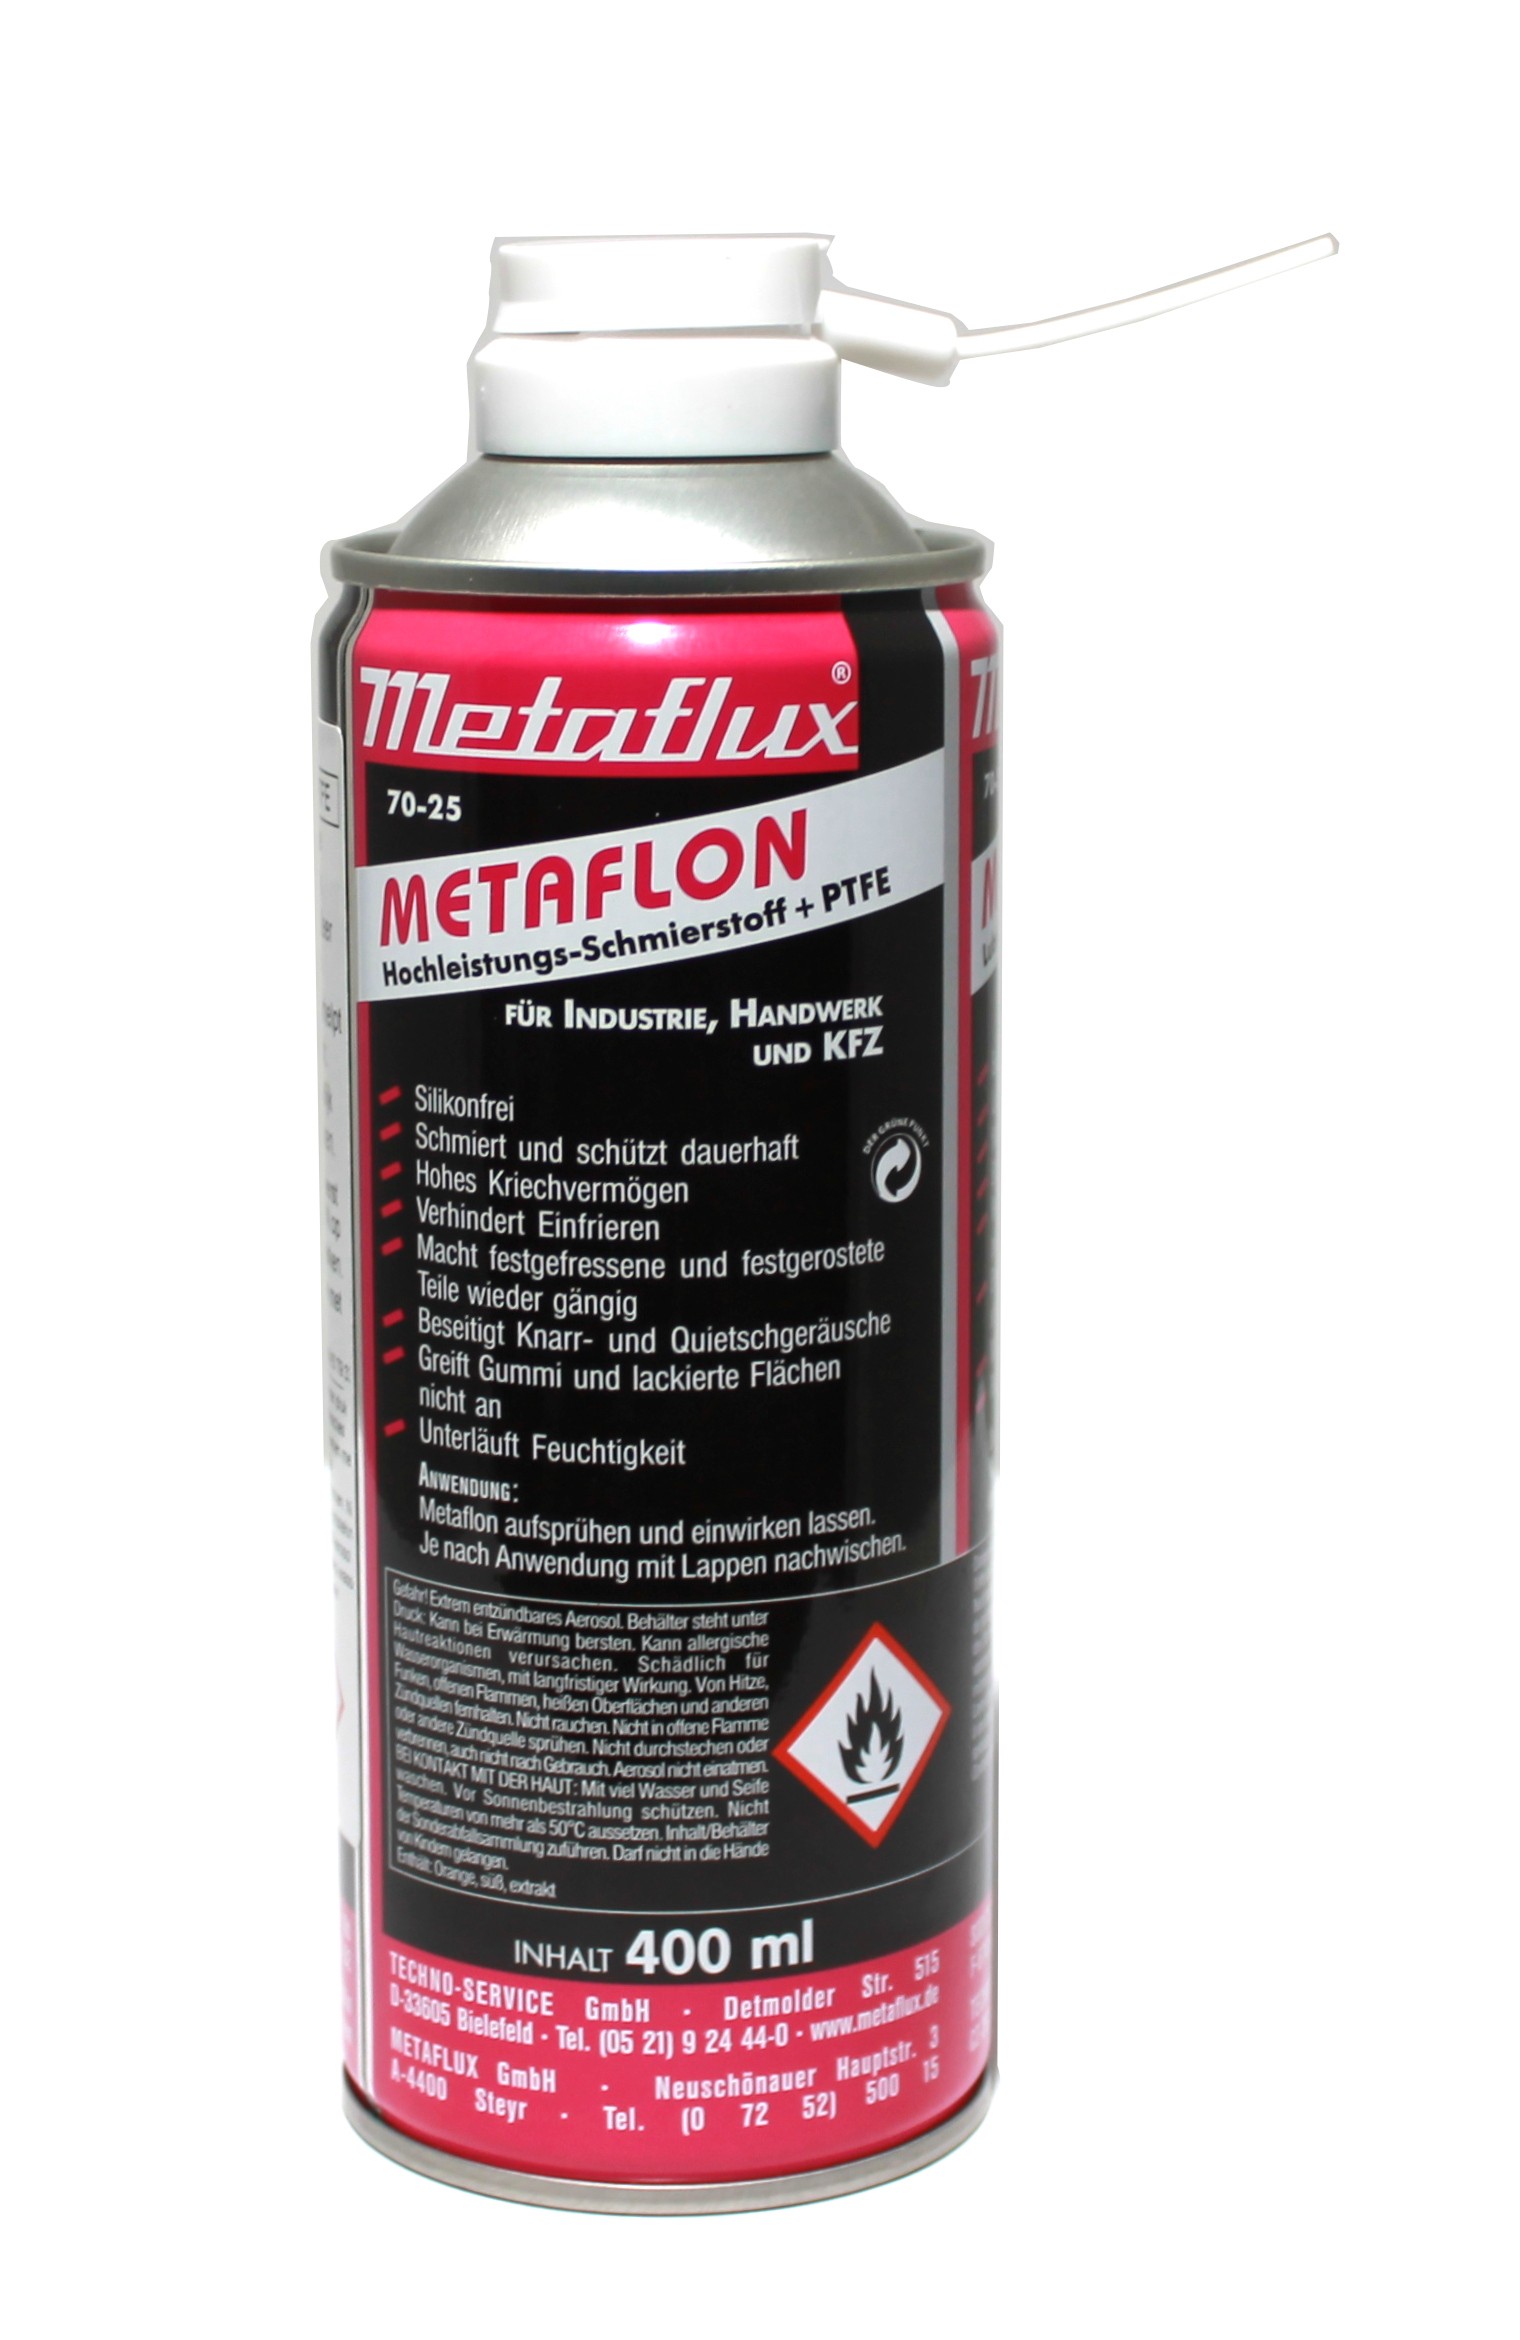 METAFLUX Metaflon Ptfe Spray, 400ml kopen? - Auto olie & additieven